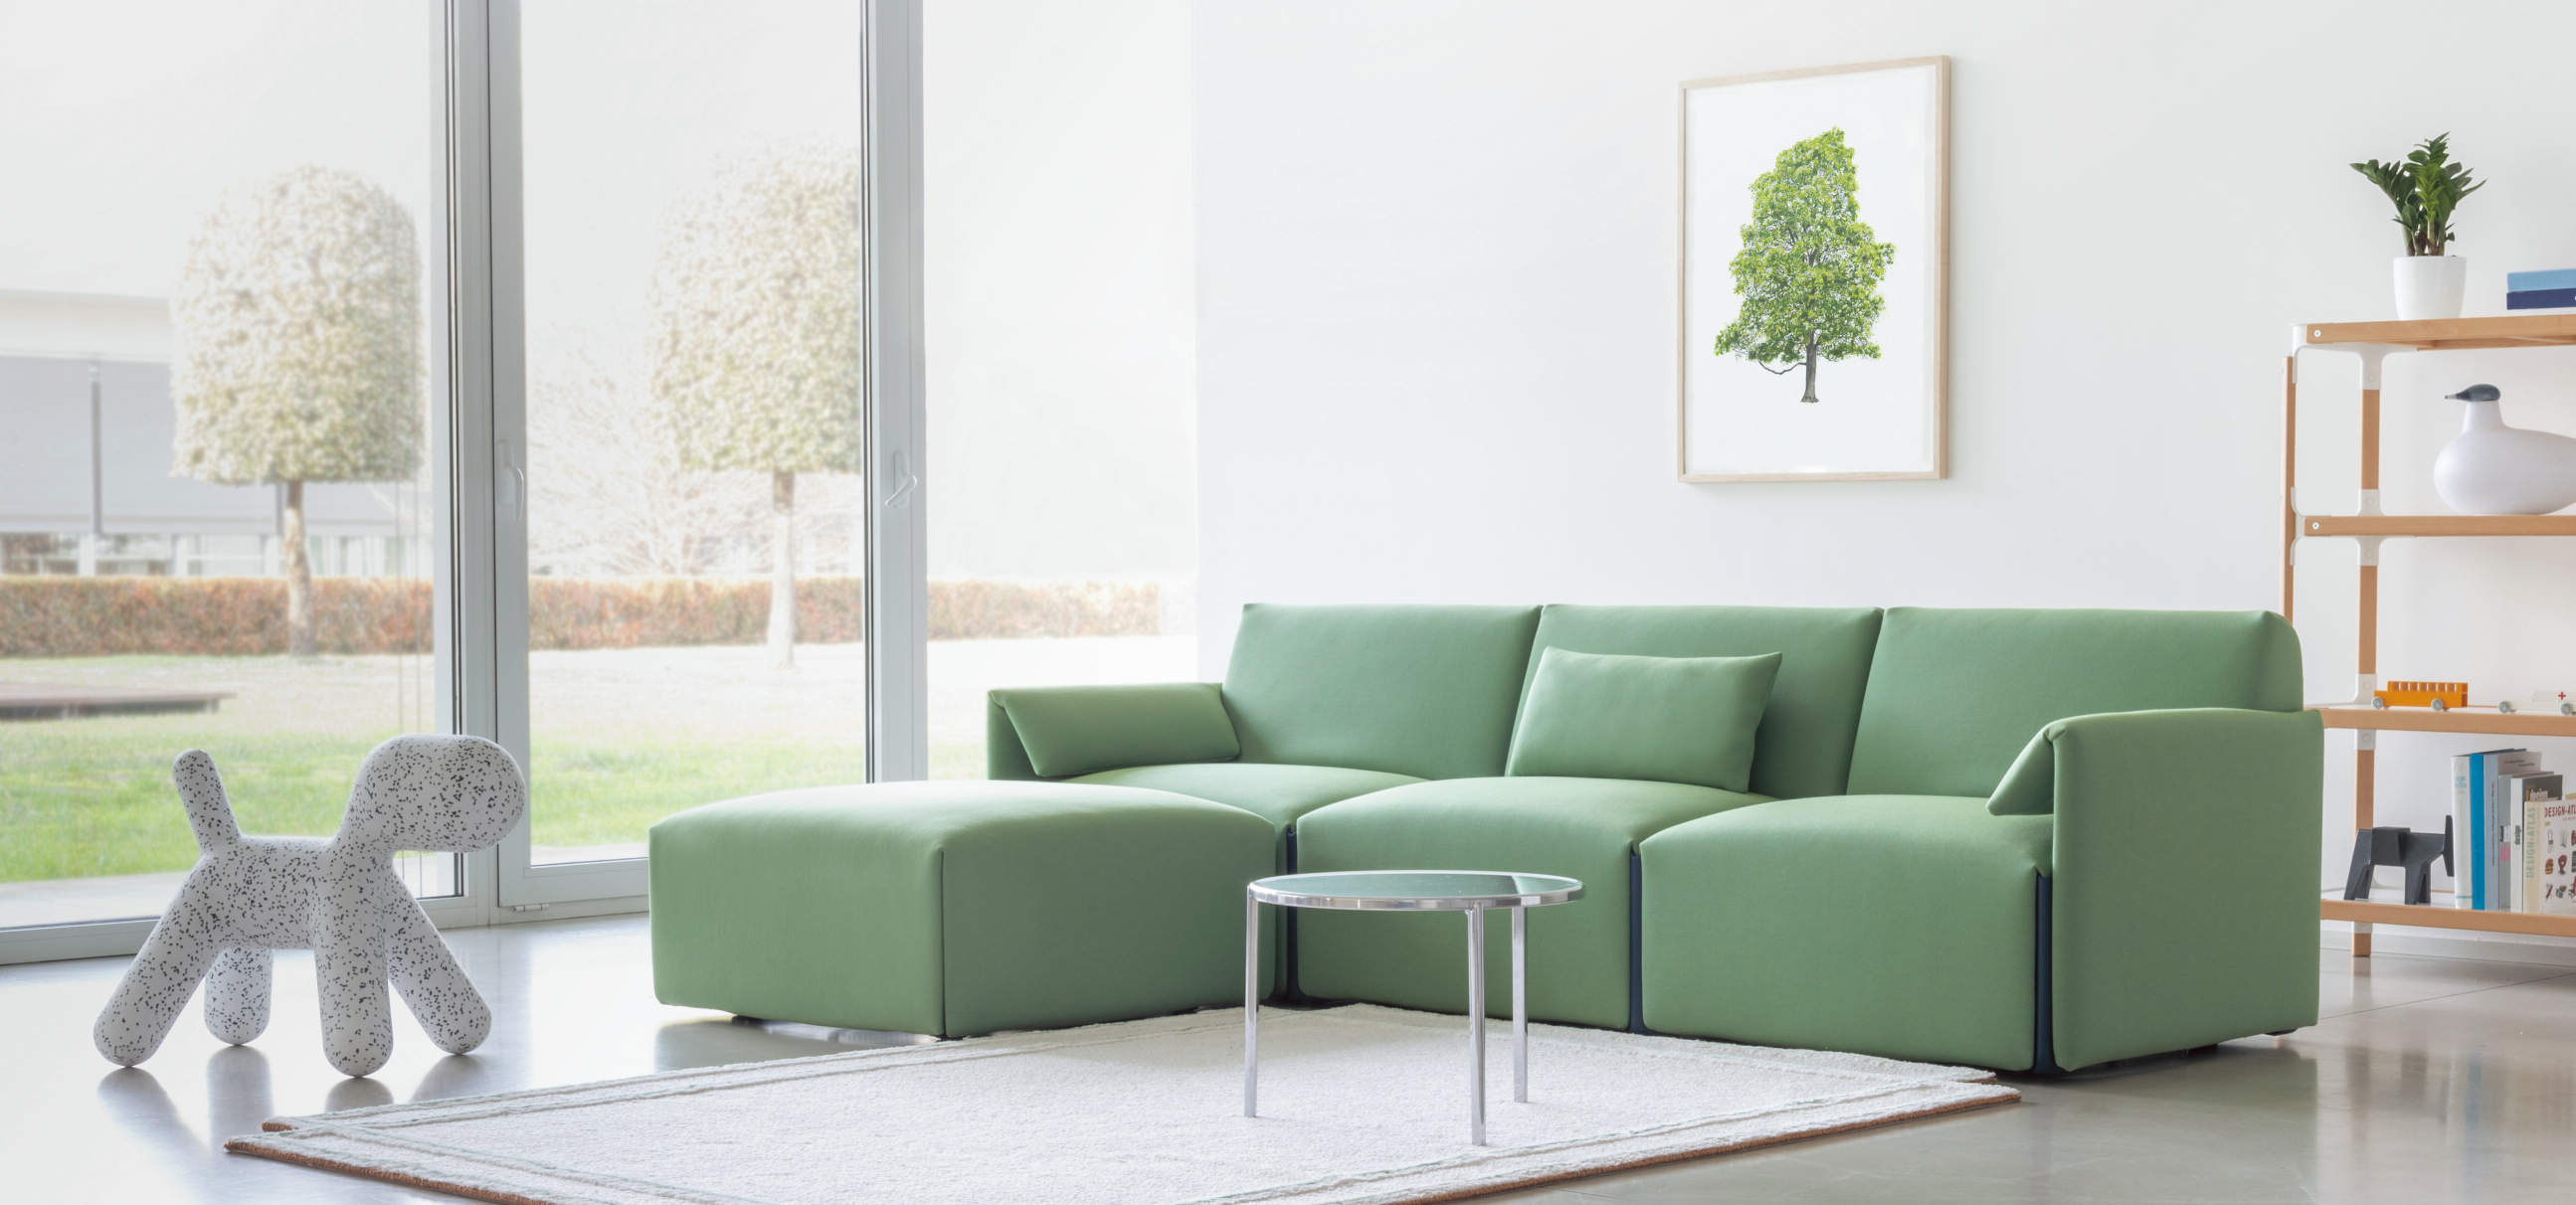 緑色のソファがある明るい空間